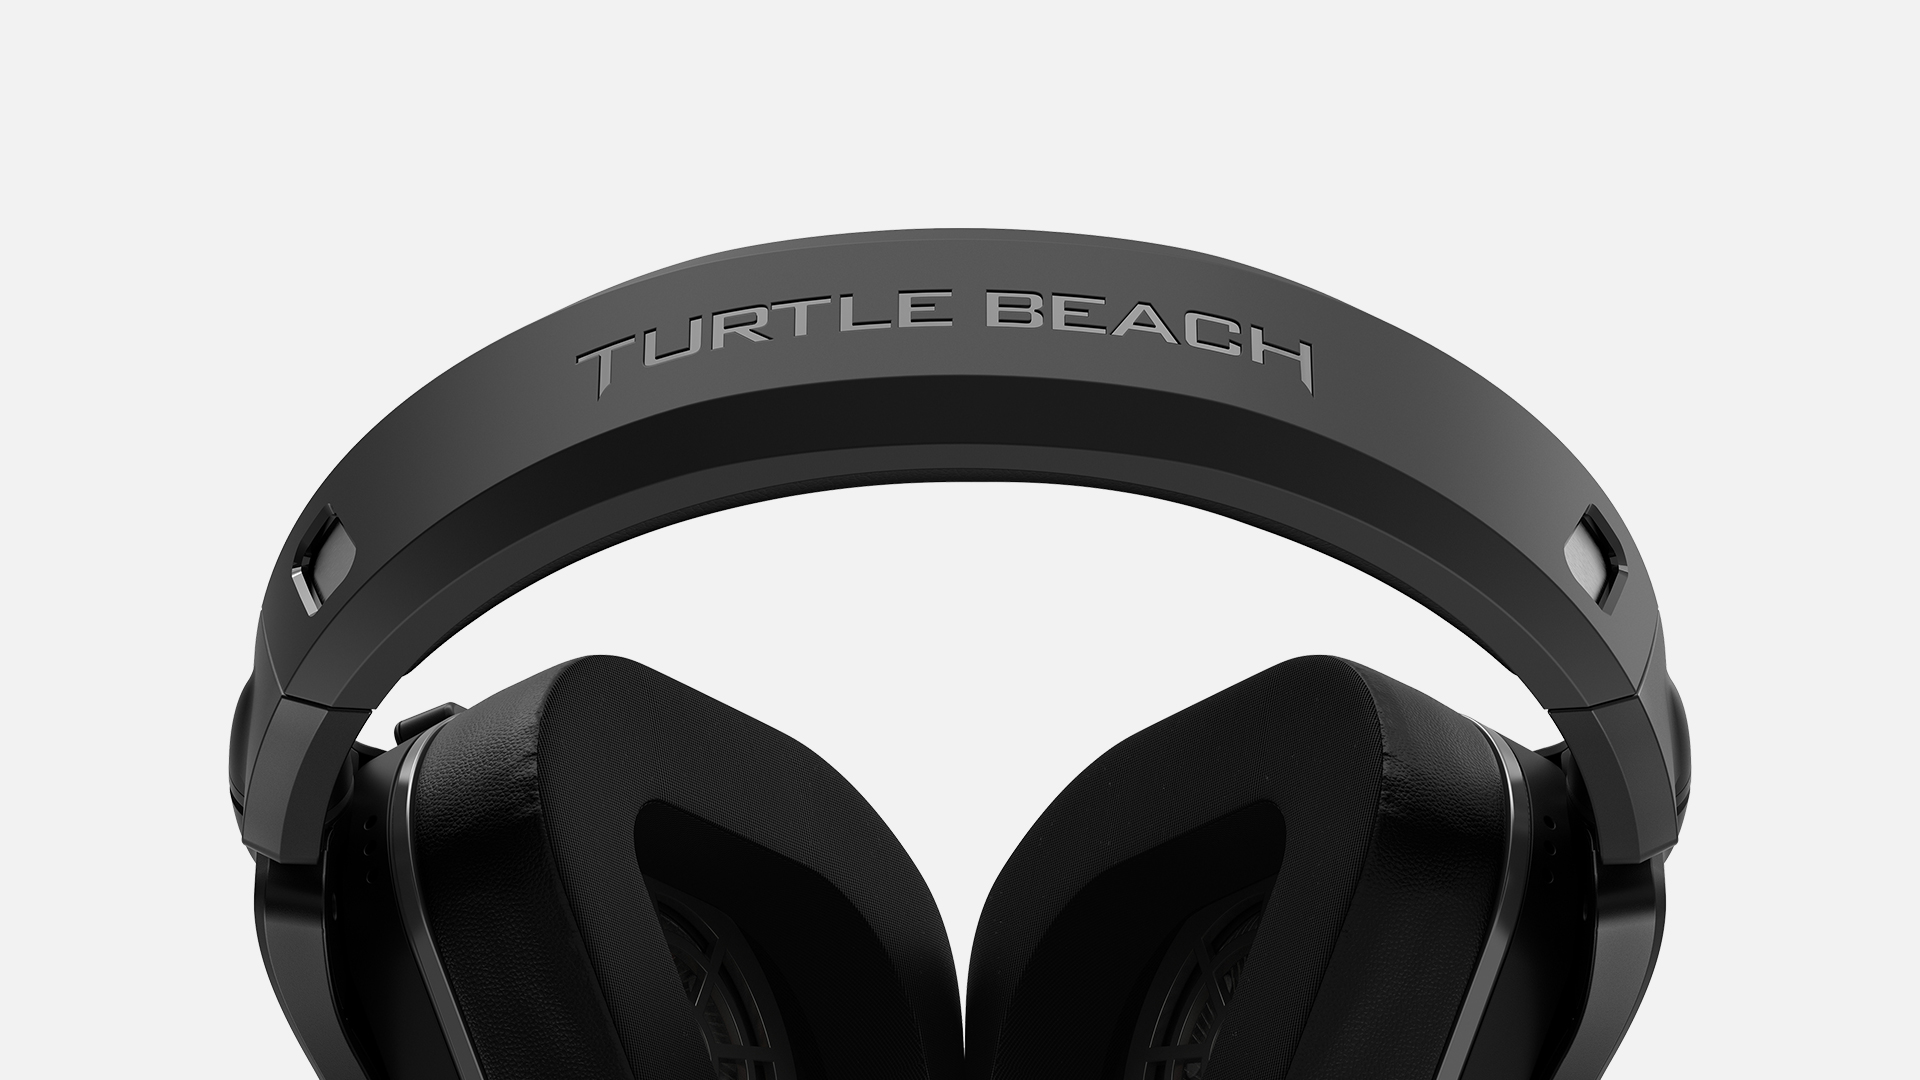 turtle beach wireless headset xbox one x